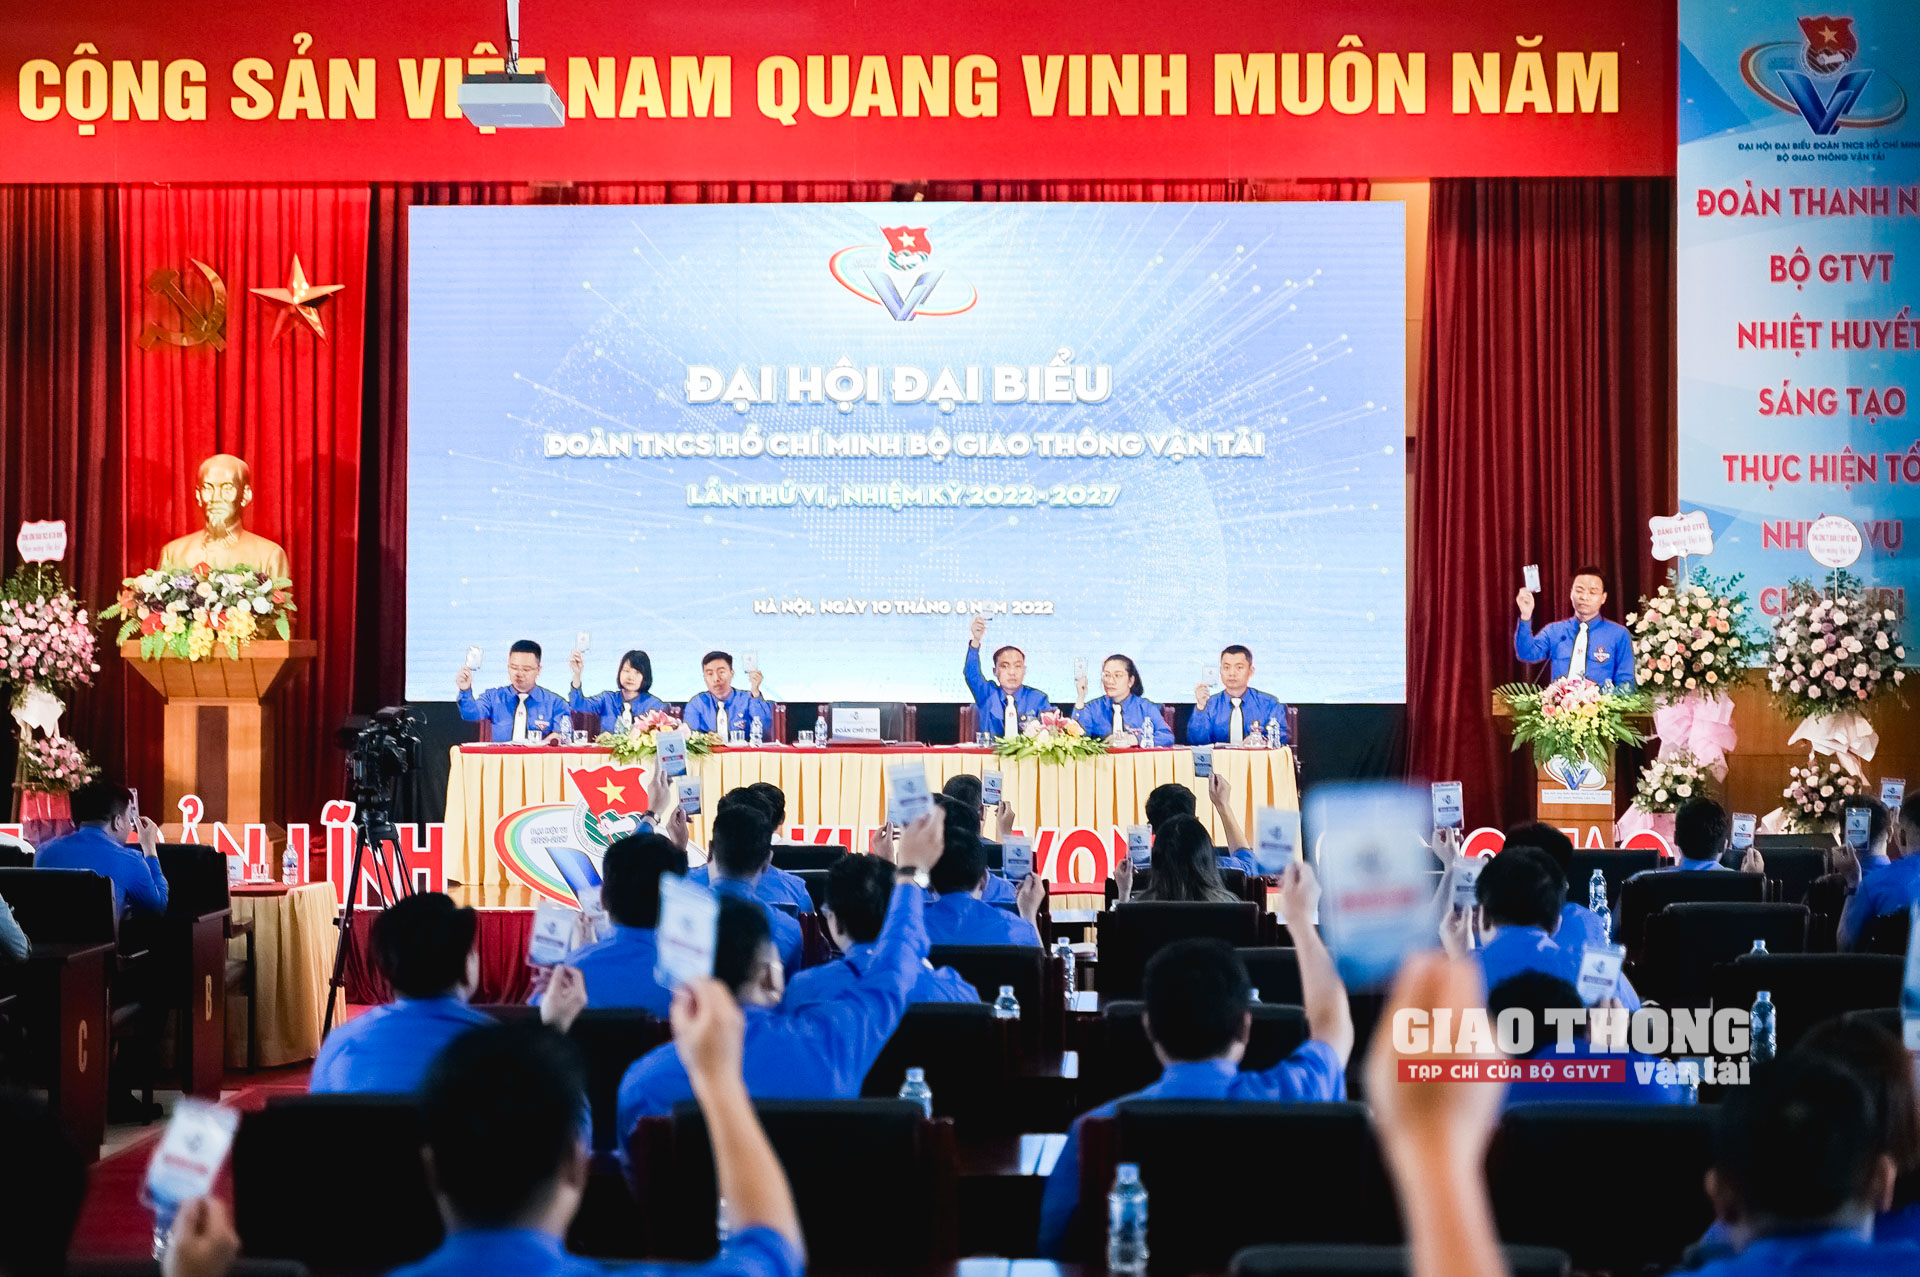 Đại hội có sự tham dự của khoảng 150 đại biểu, đại diện cho 8.000 đoàn viên thanh niên của Bộ GTVT